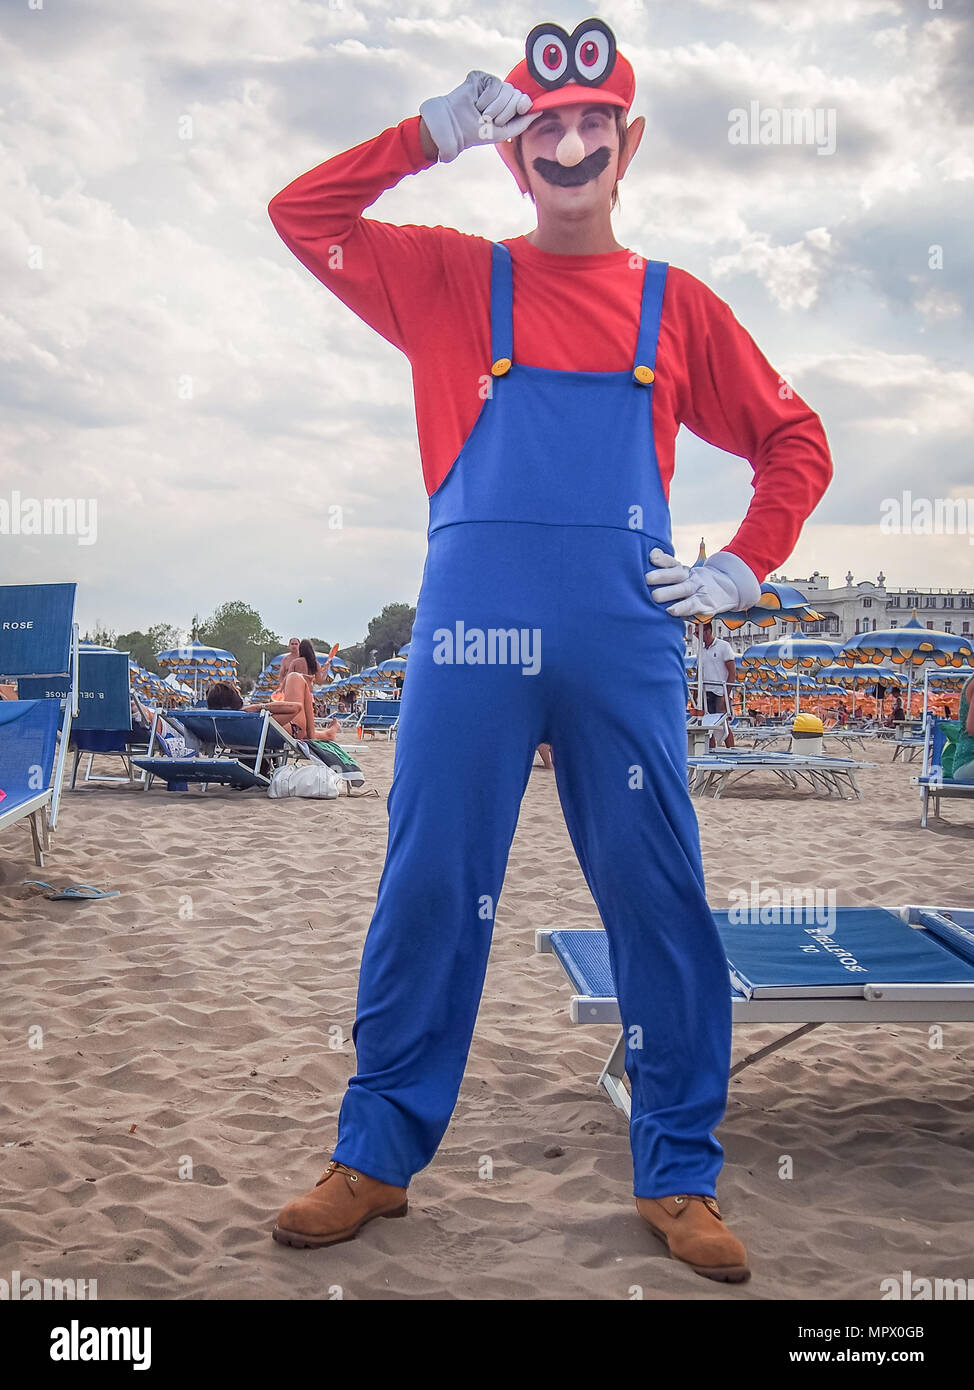 RIMINI, ITALIE - 22 juillet 2017 : Jeune homme cosplayeur dans le costume Mario posant sur la plage Banque D'Images